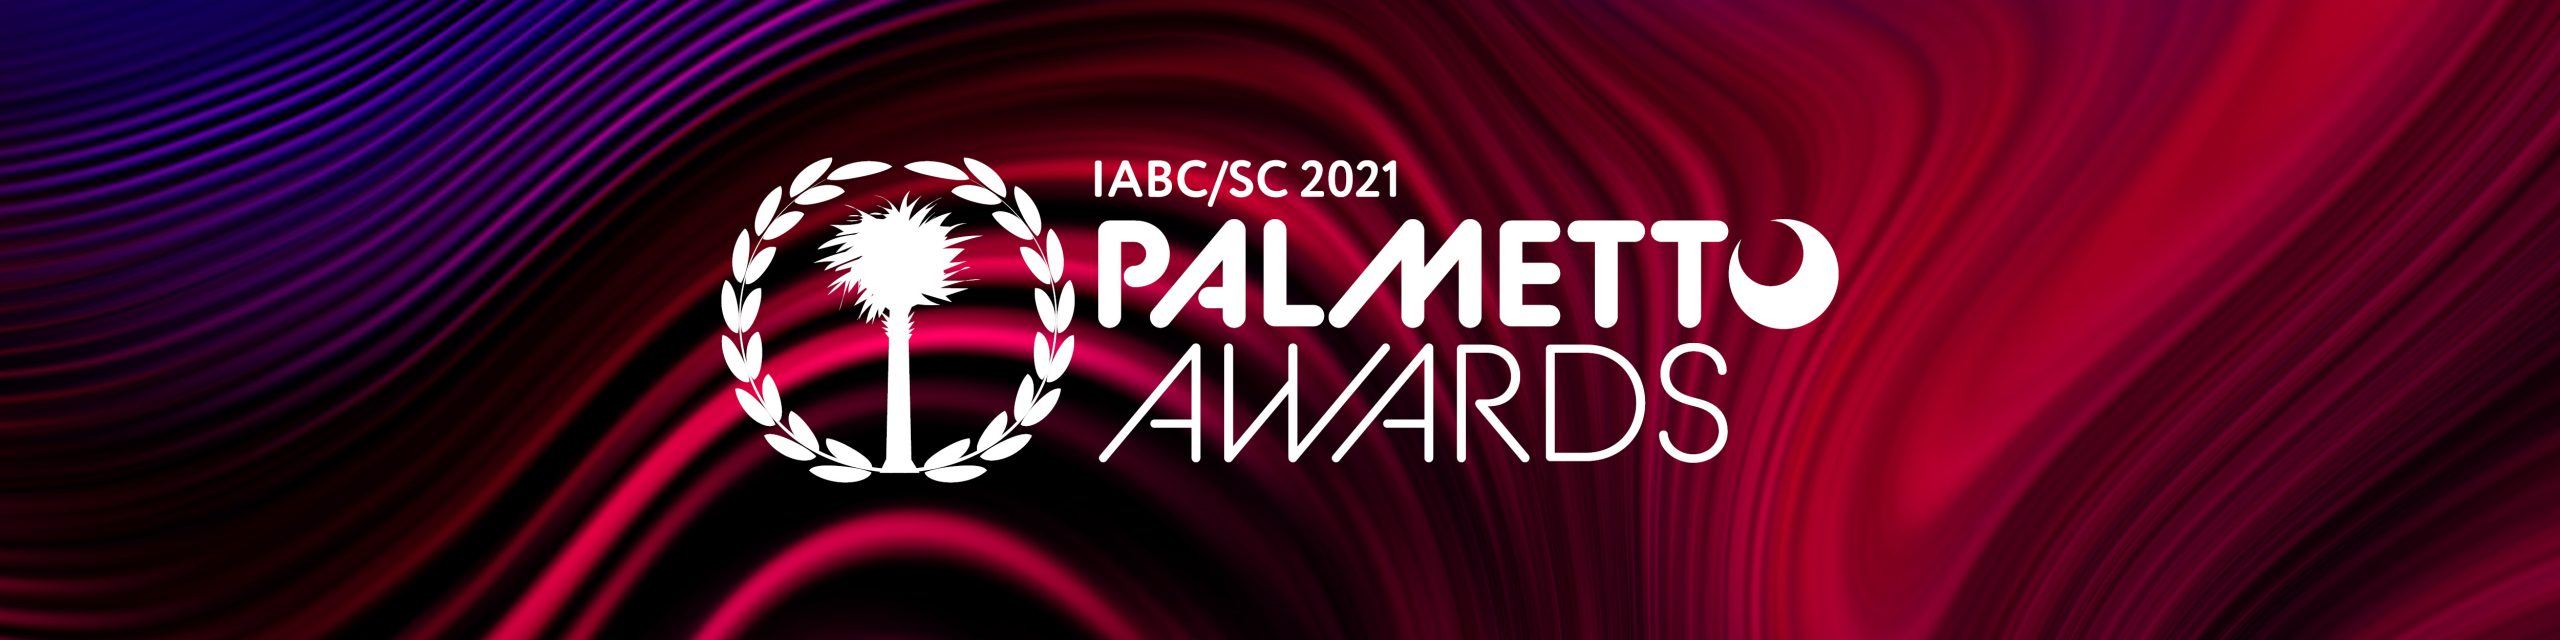 Palmetto Awards 2021 Logo